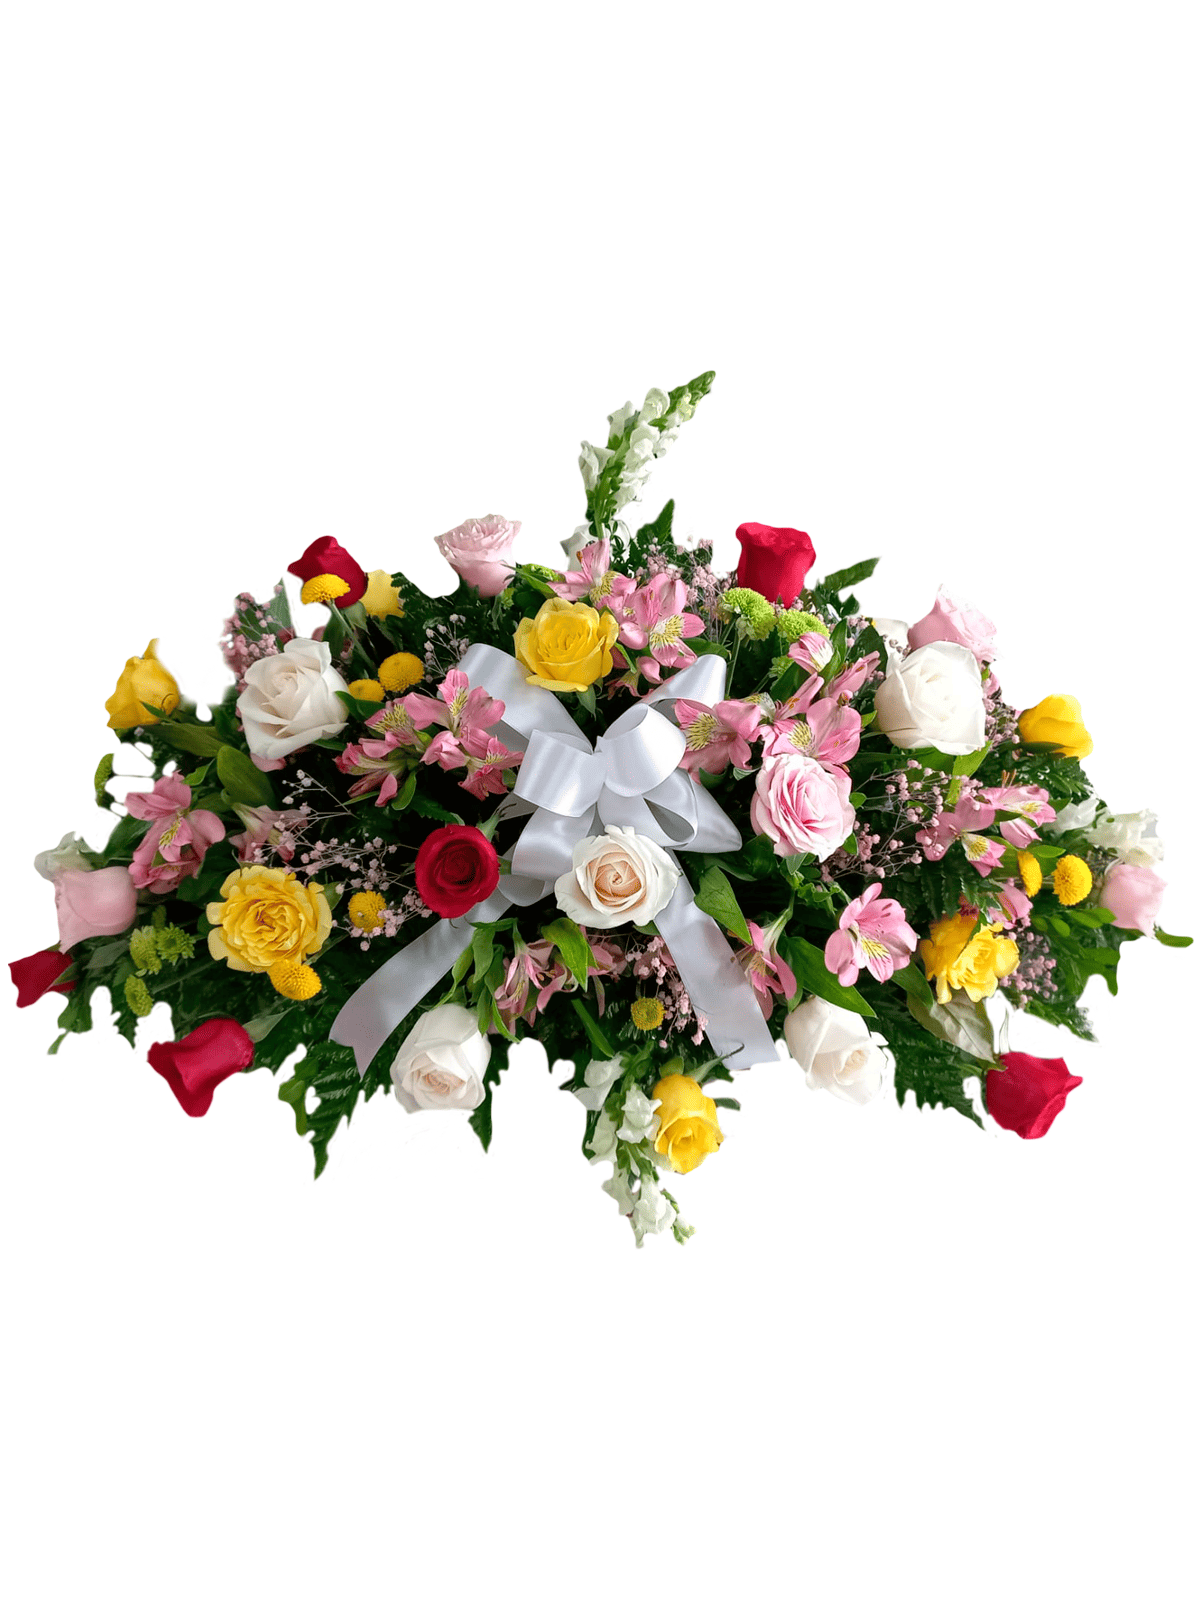 FUNEBRE 07- Palma Fúnebre Variada (Rosas de colores y Tigrillo)